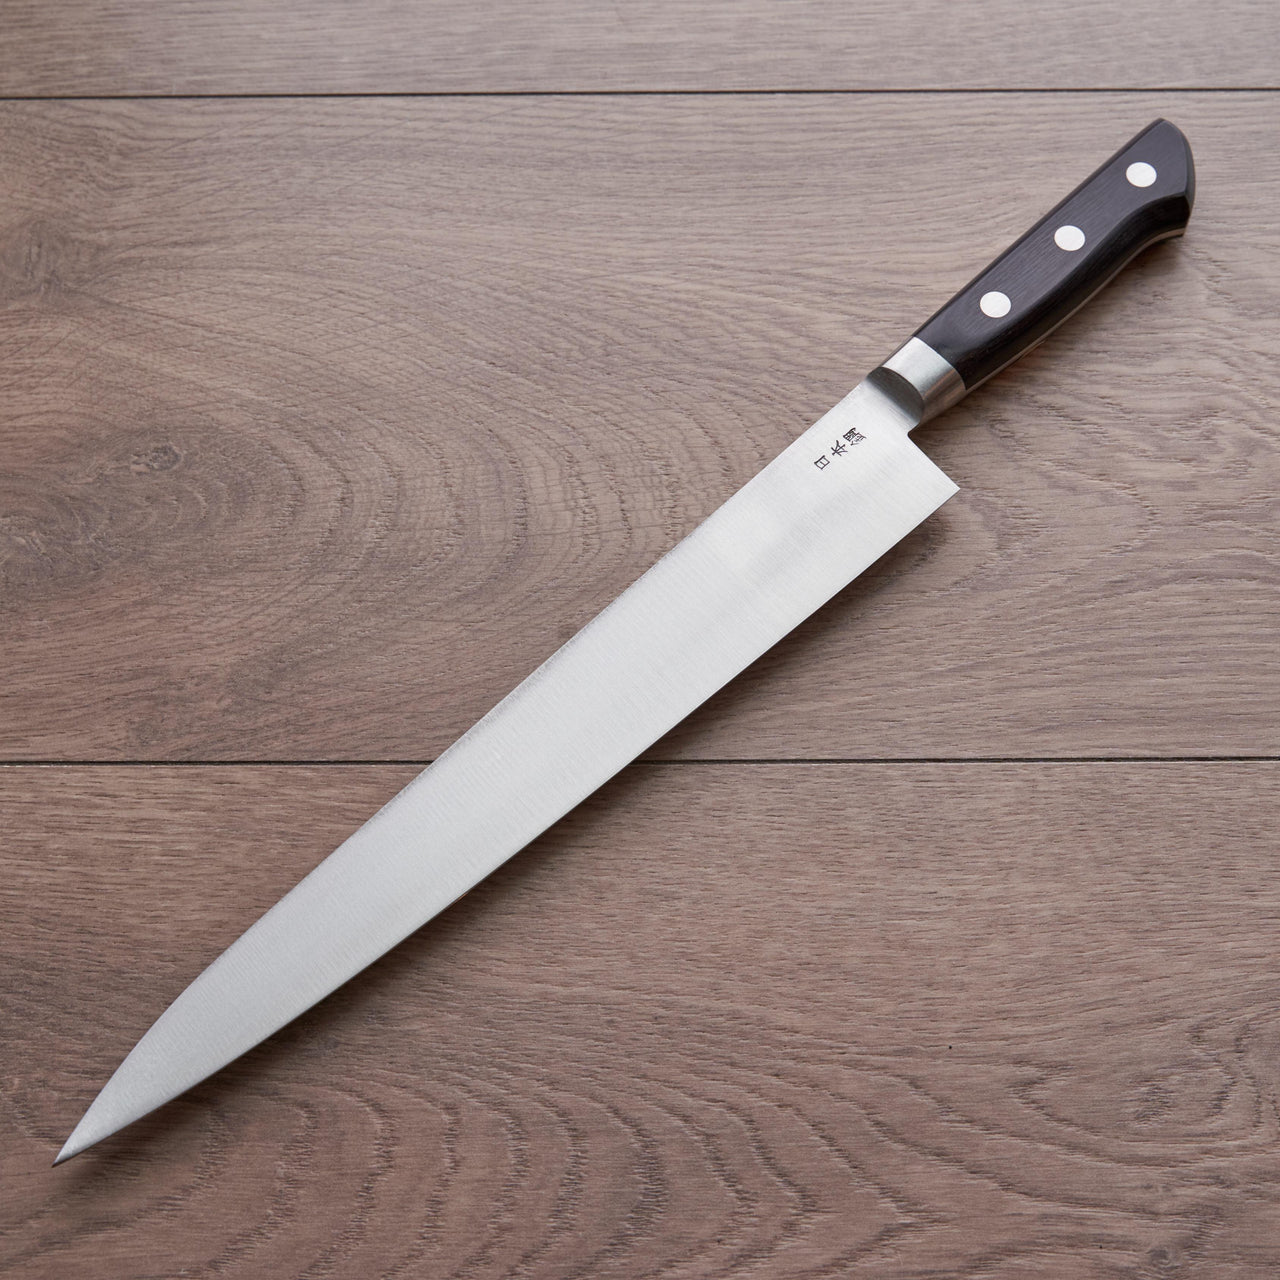 Sakai Kikumori Nihonko Carbon Sujihiki 270mm-Knife-Sakai Kikumori-Carbon Knife Co